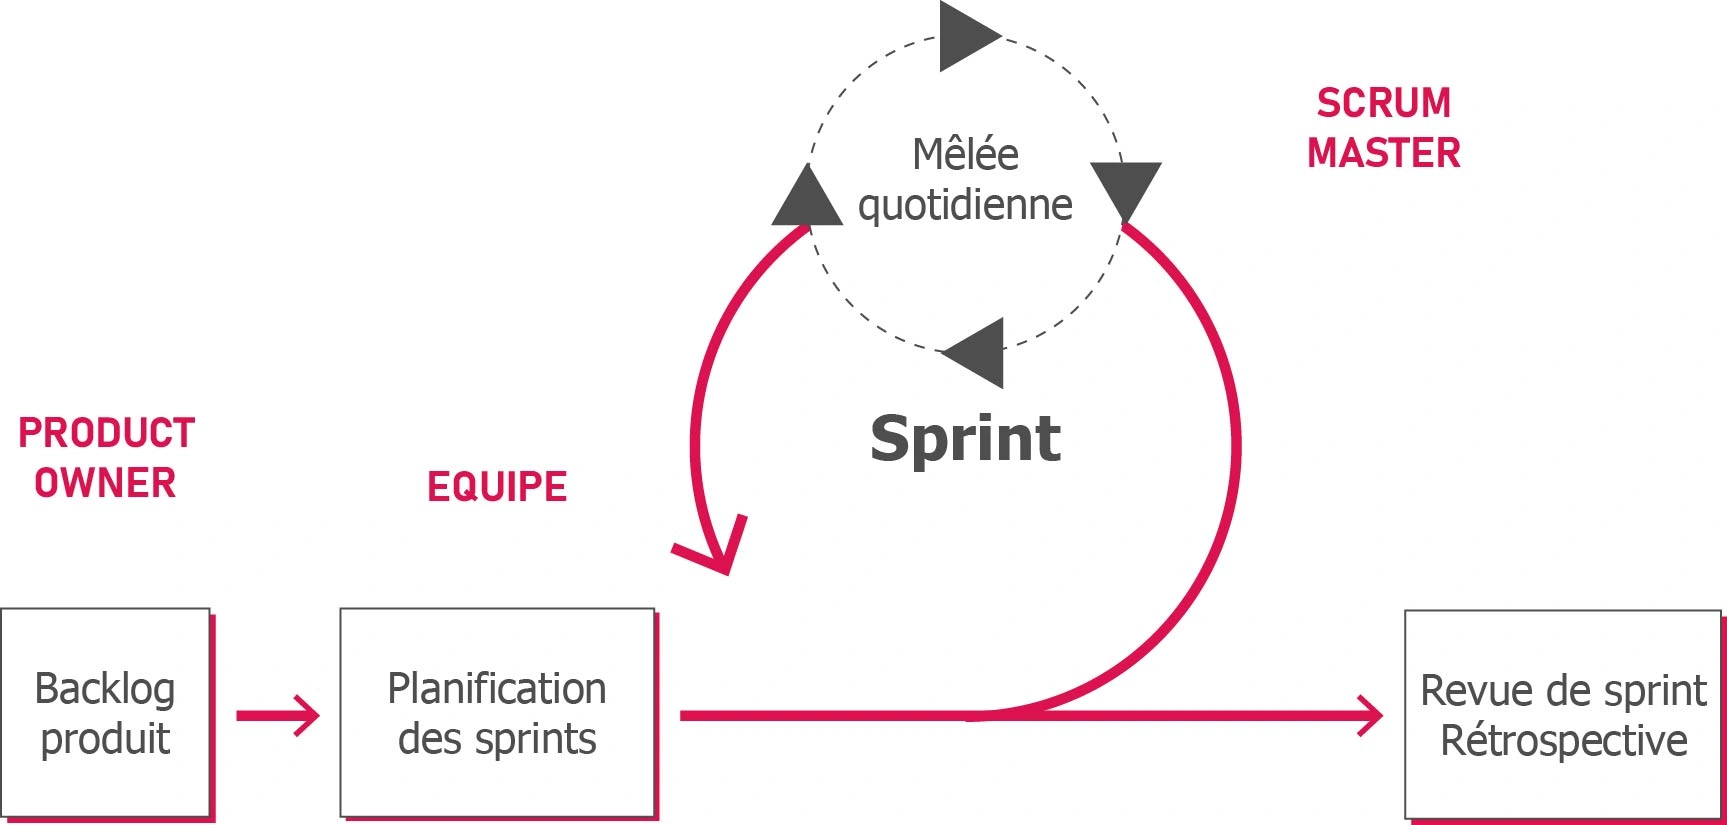 Schéma de fonction de la méthode agile avec les différentes étapes : backlog produit, planifications des sprints, sprints, revue de sprint et rétrospective